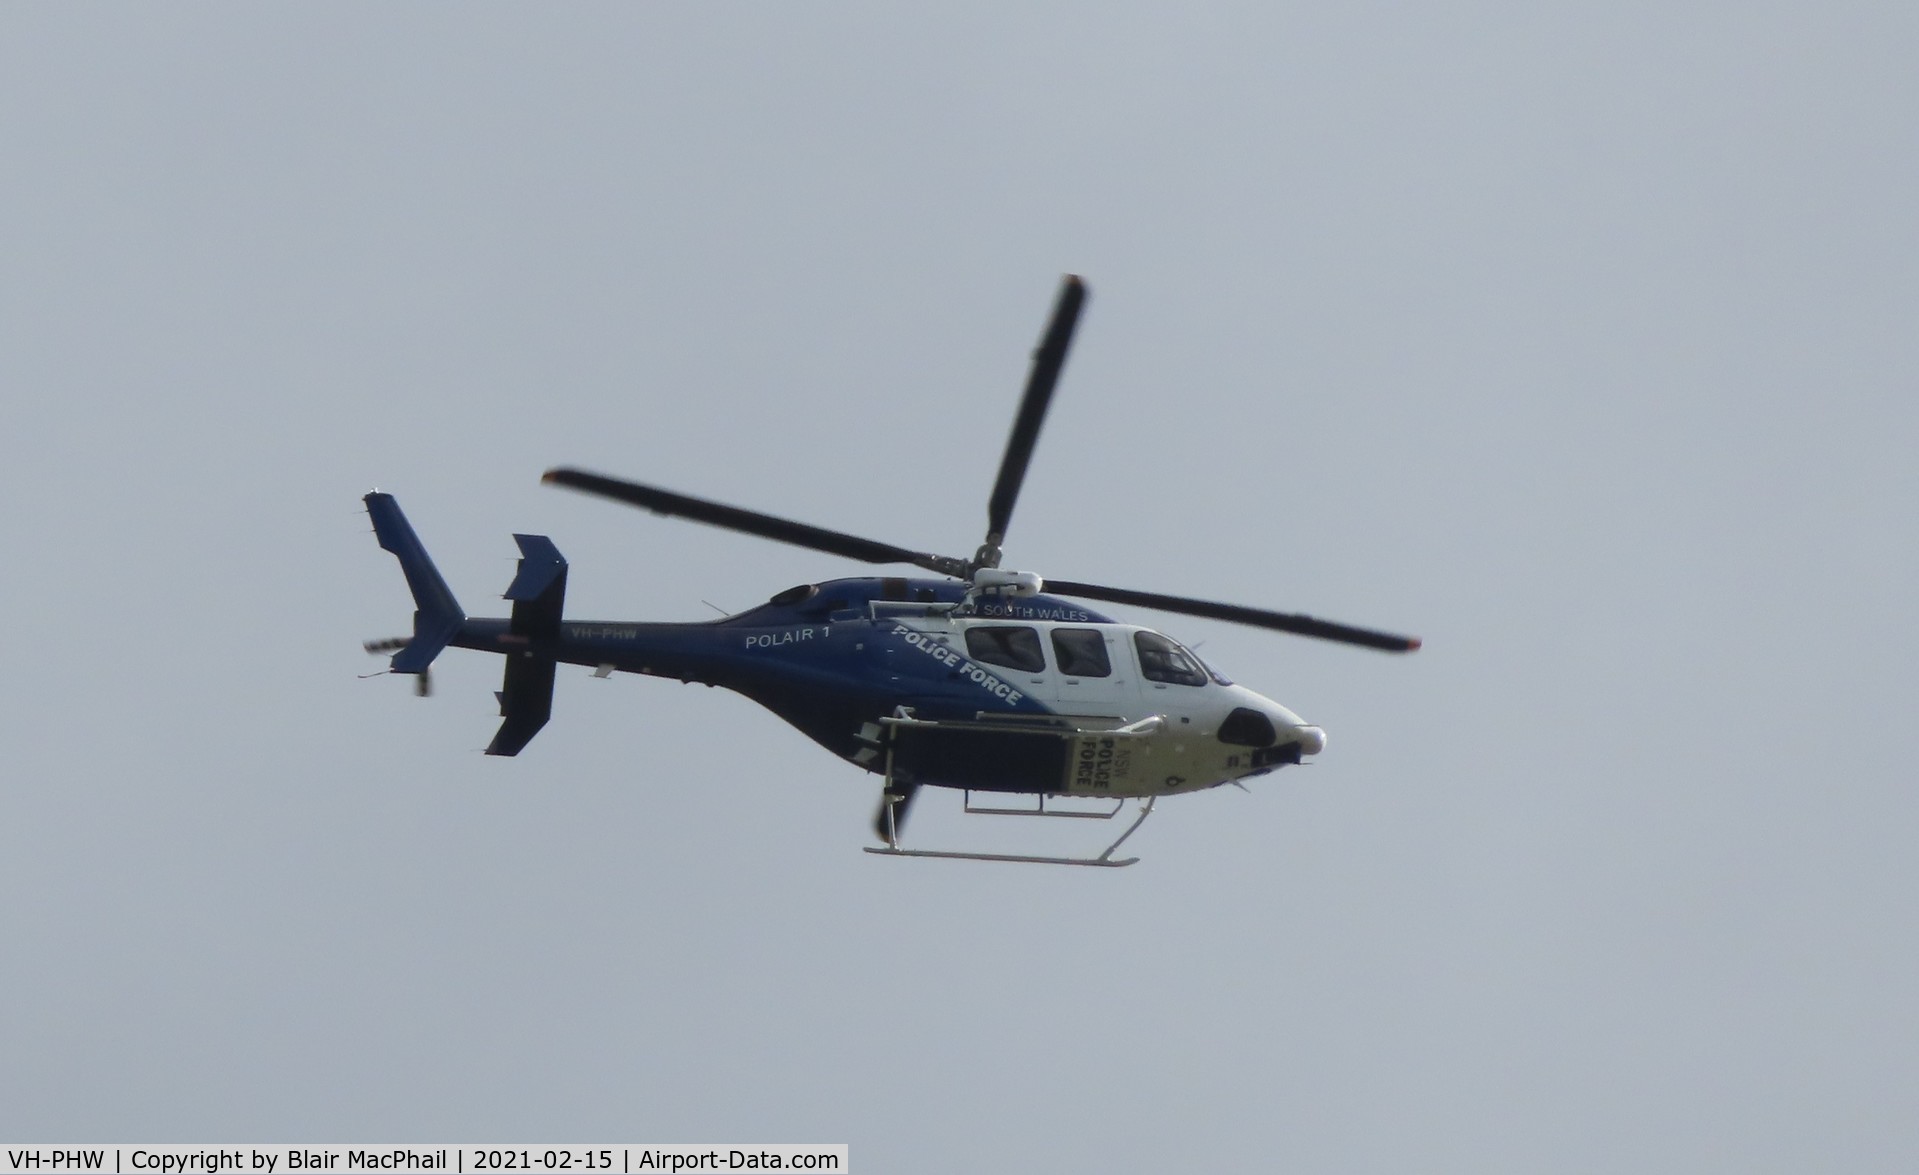 VH-PHW, 2020 Bell 429 GlobalRanger C/N 57390, VH-PHW (POLAir1) at 1100ft